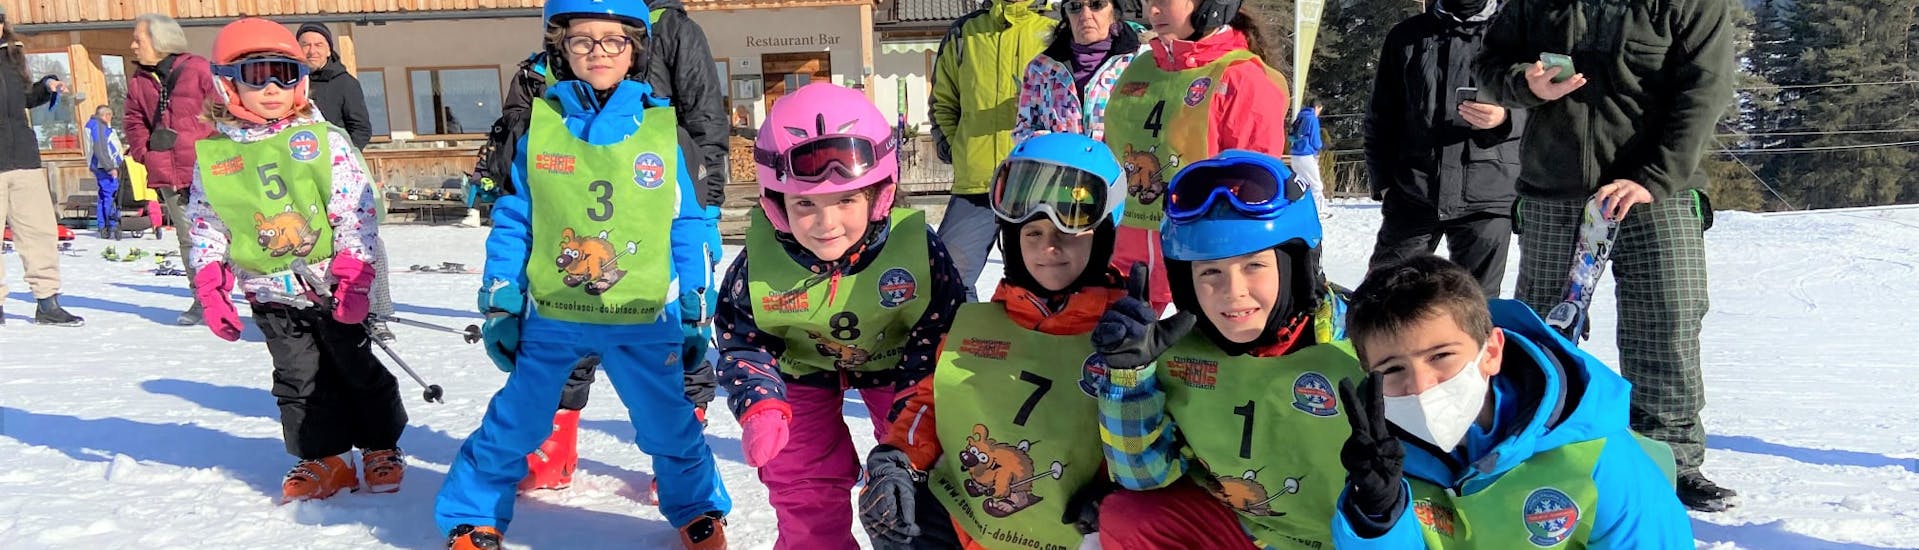 Gruppo di bambini a fondo pista dopo lezione di sci per avanzati con la scuola di sci Dobbiaco.